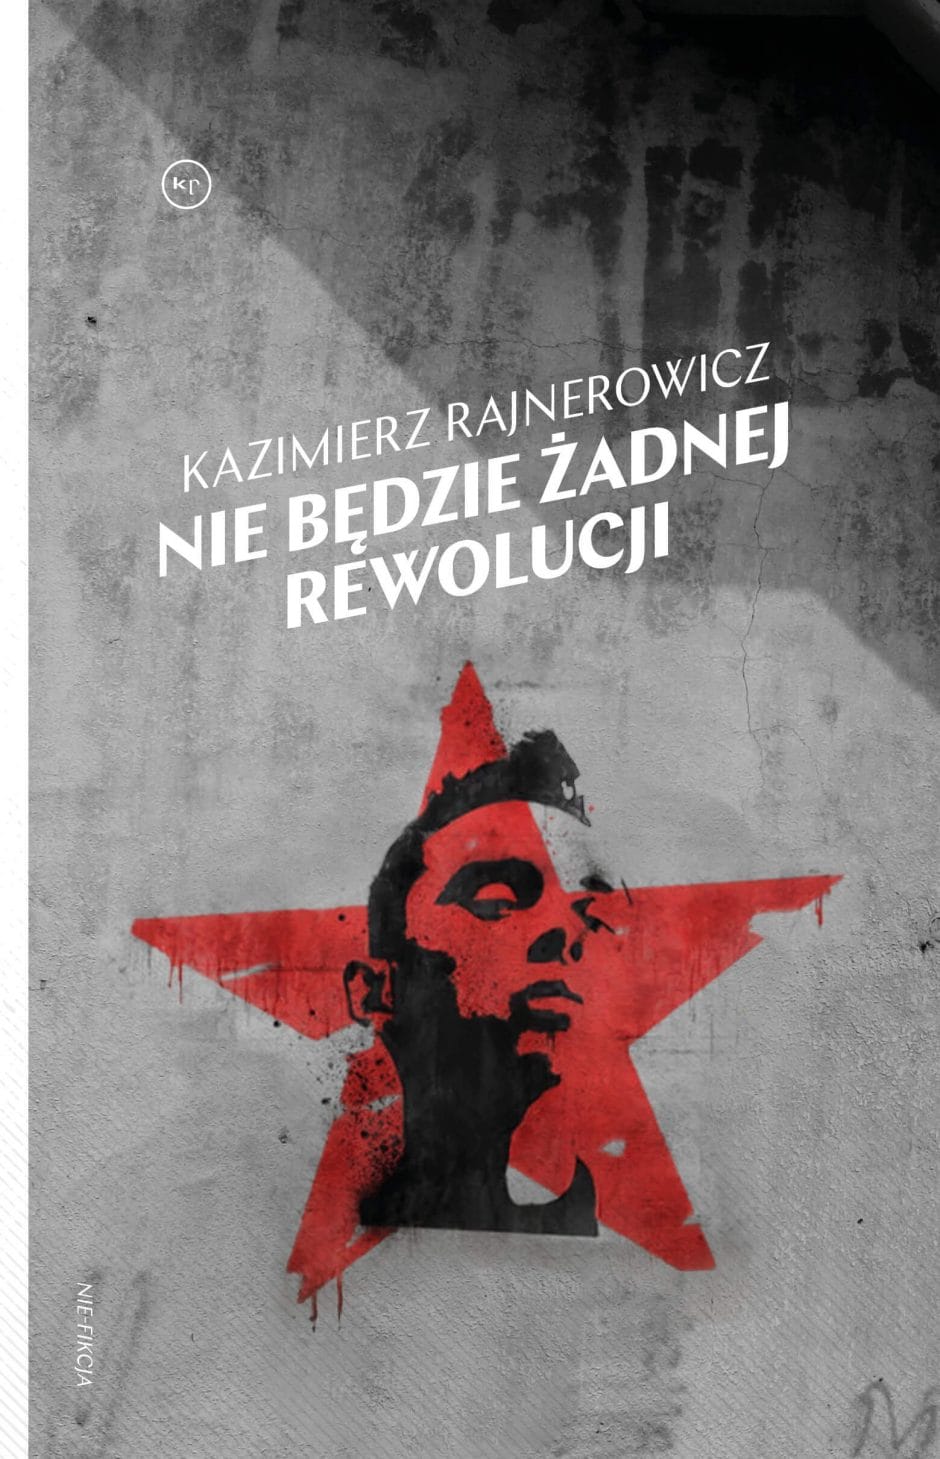 Kazimierz Rajnerowicz: Nie będzie żadnej rewolucji